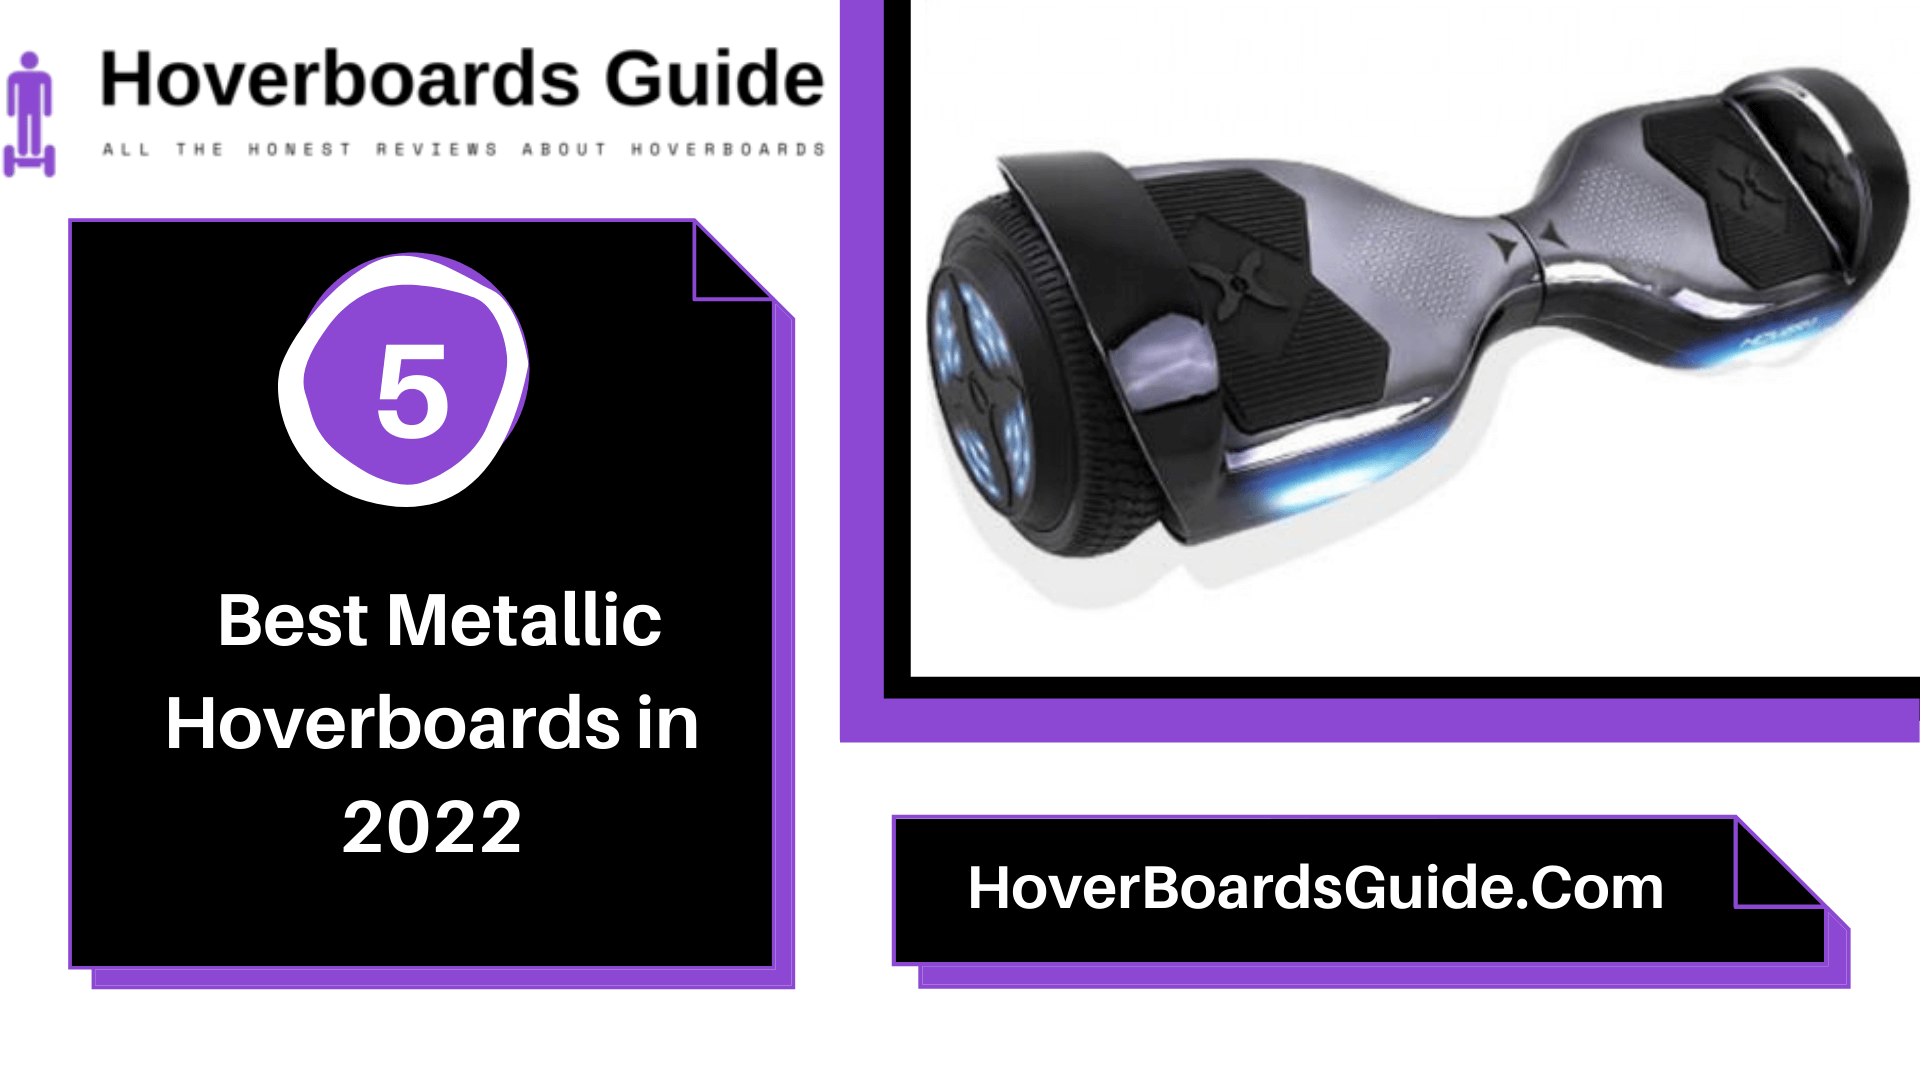 5 Best Metallic Hoverboards in 2022